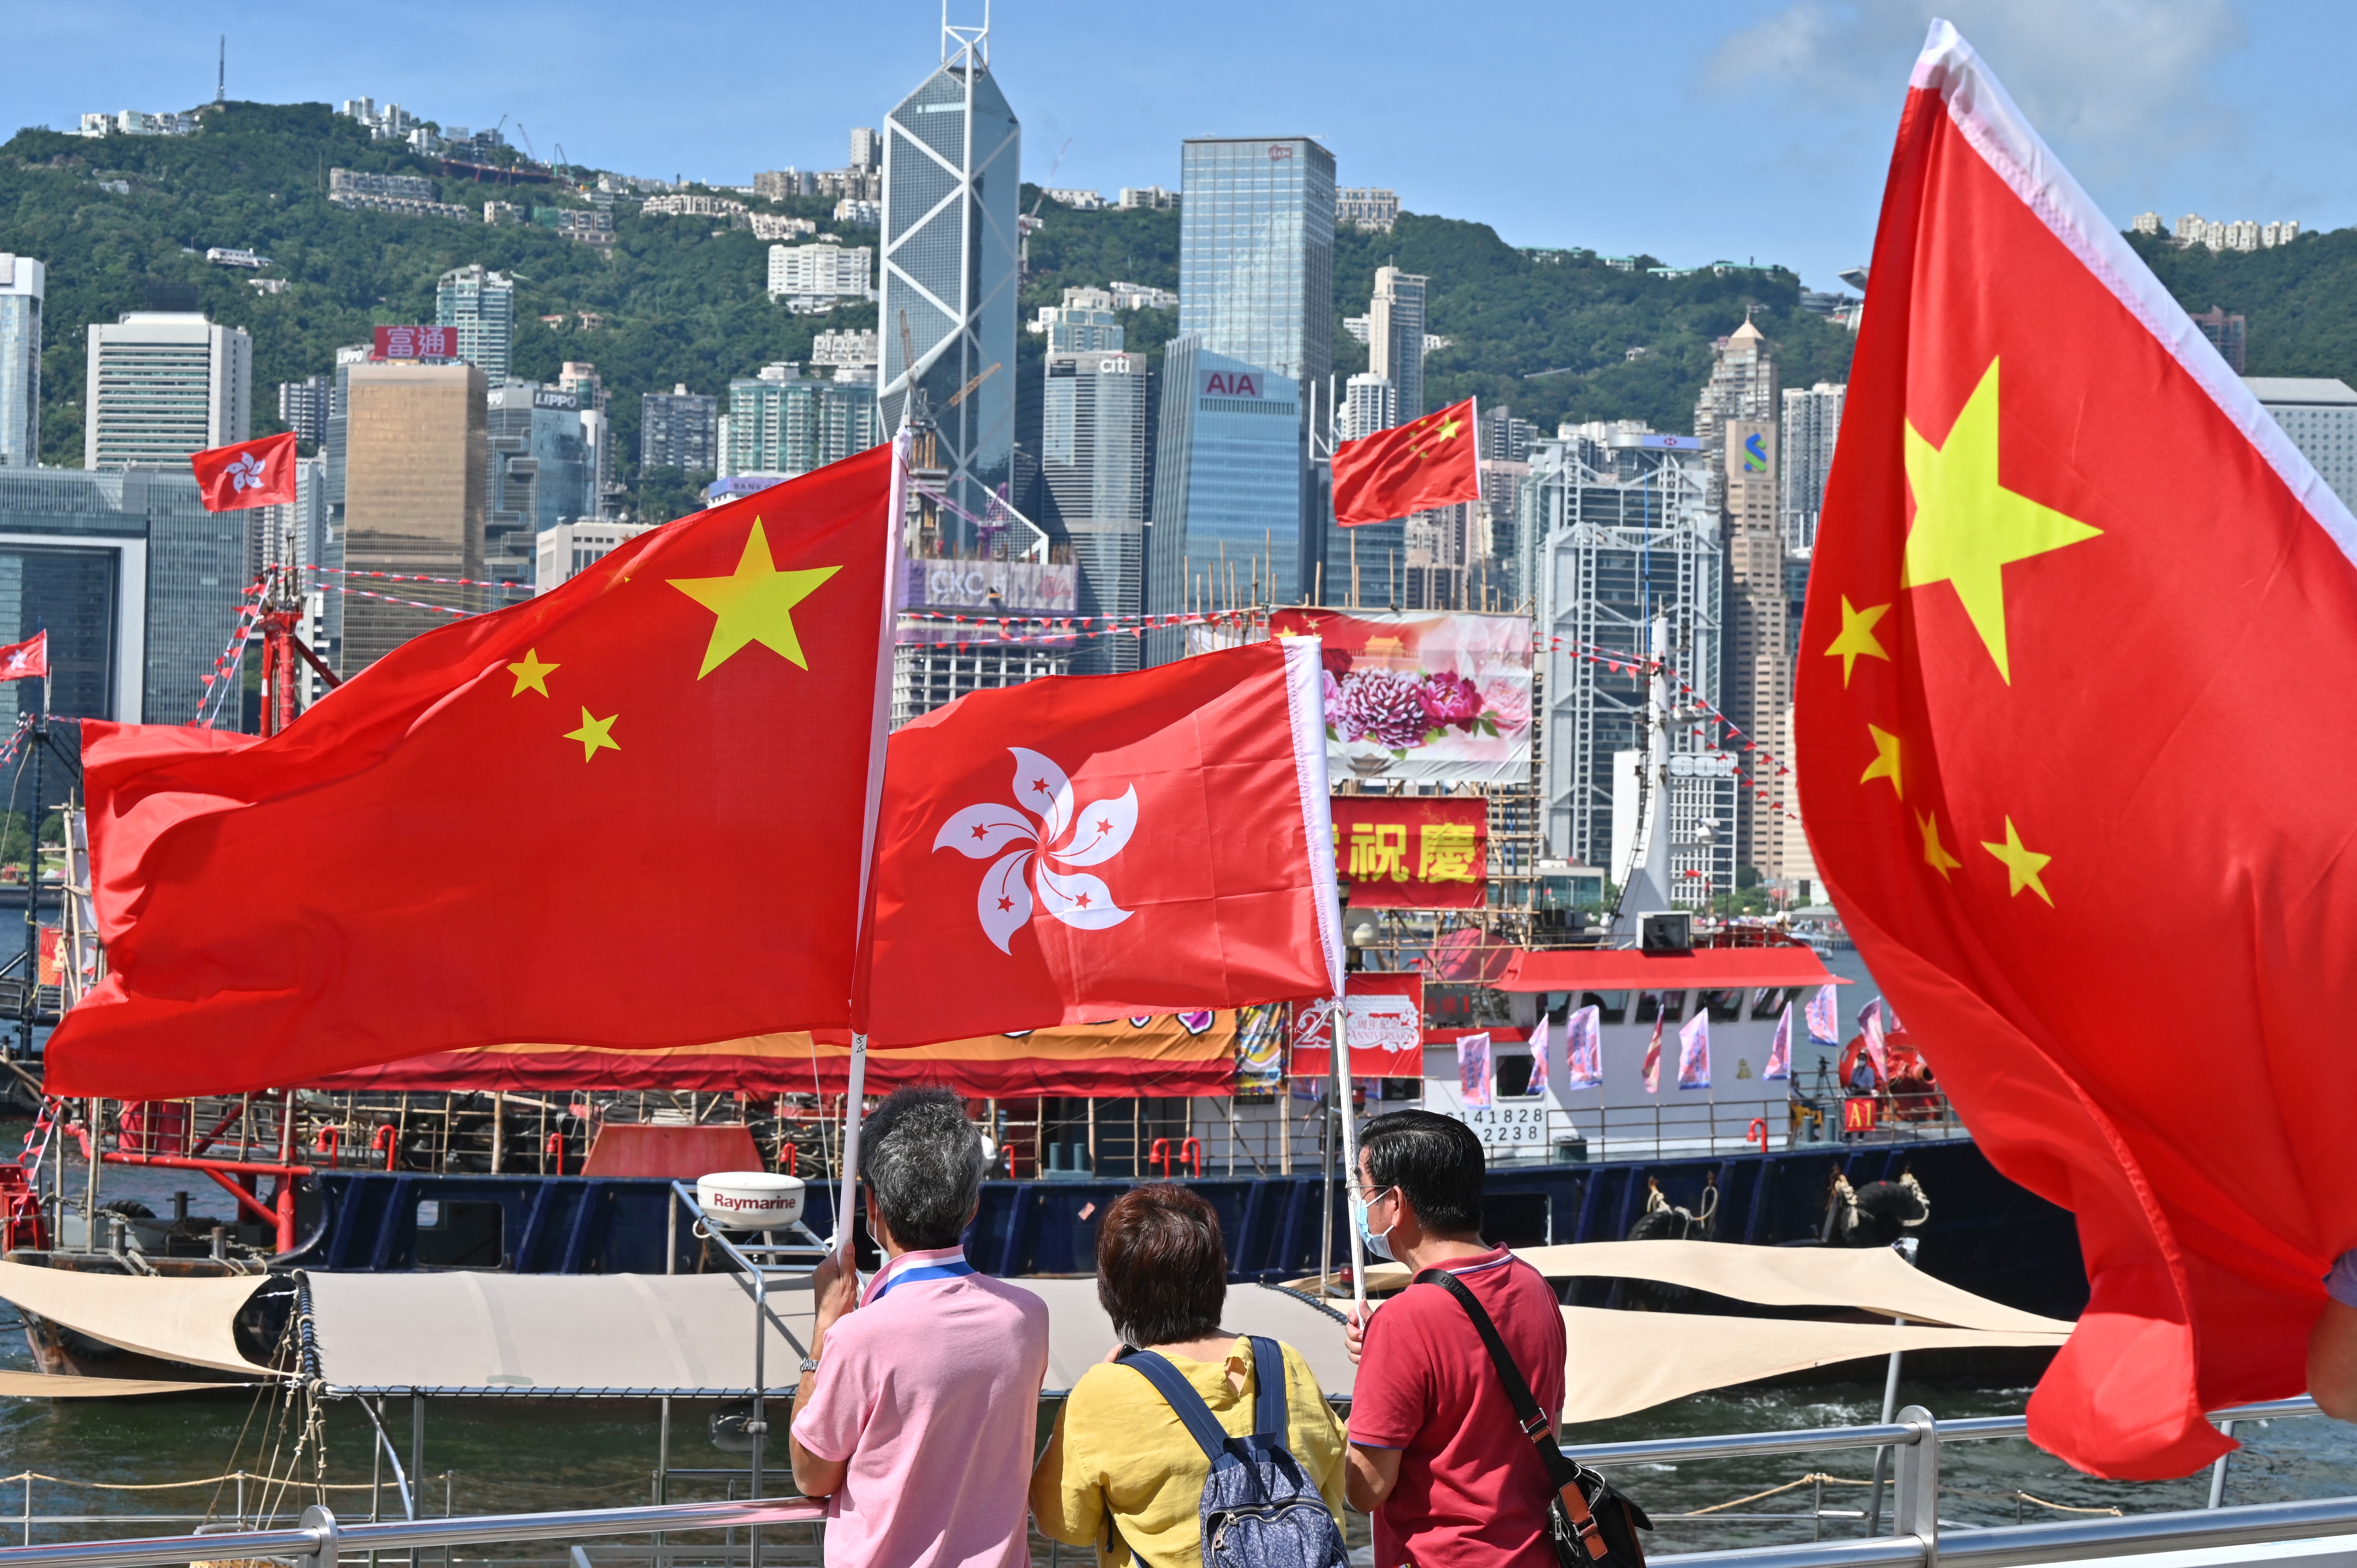 Tương lai lá cờ Trung Quốc ở Hồng Kông: Với sự thay đổi chính trị và xã hội, lá cờ Trung Quốc ở Hồng Kông đang trải qua những biến động. Tuy nhiên, lá cờ Trung Quốc vẫn sẽ là biểu tượng của quyền lực và sự thống nhất của Trung Quốc. Hãy cùng quan tâm đến hình ảnh về lá cờ Trung Quốc ở Hồng Kông để hiểu rõ hơn về tương lai của đất nước này.